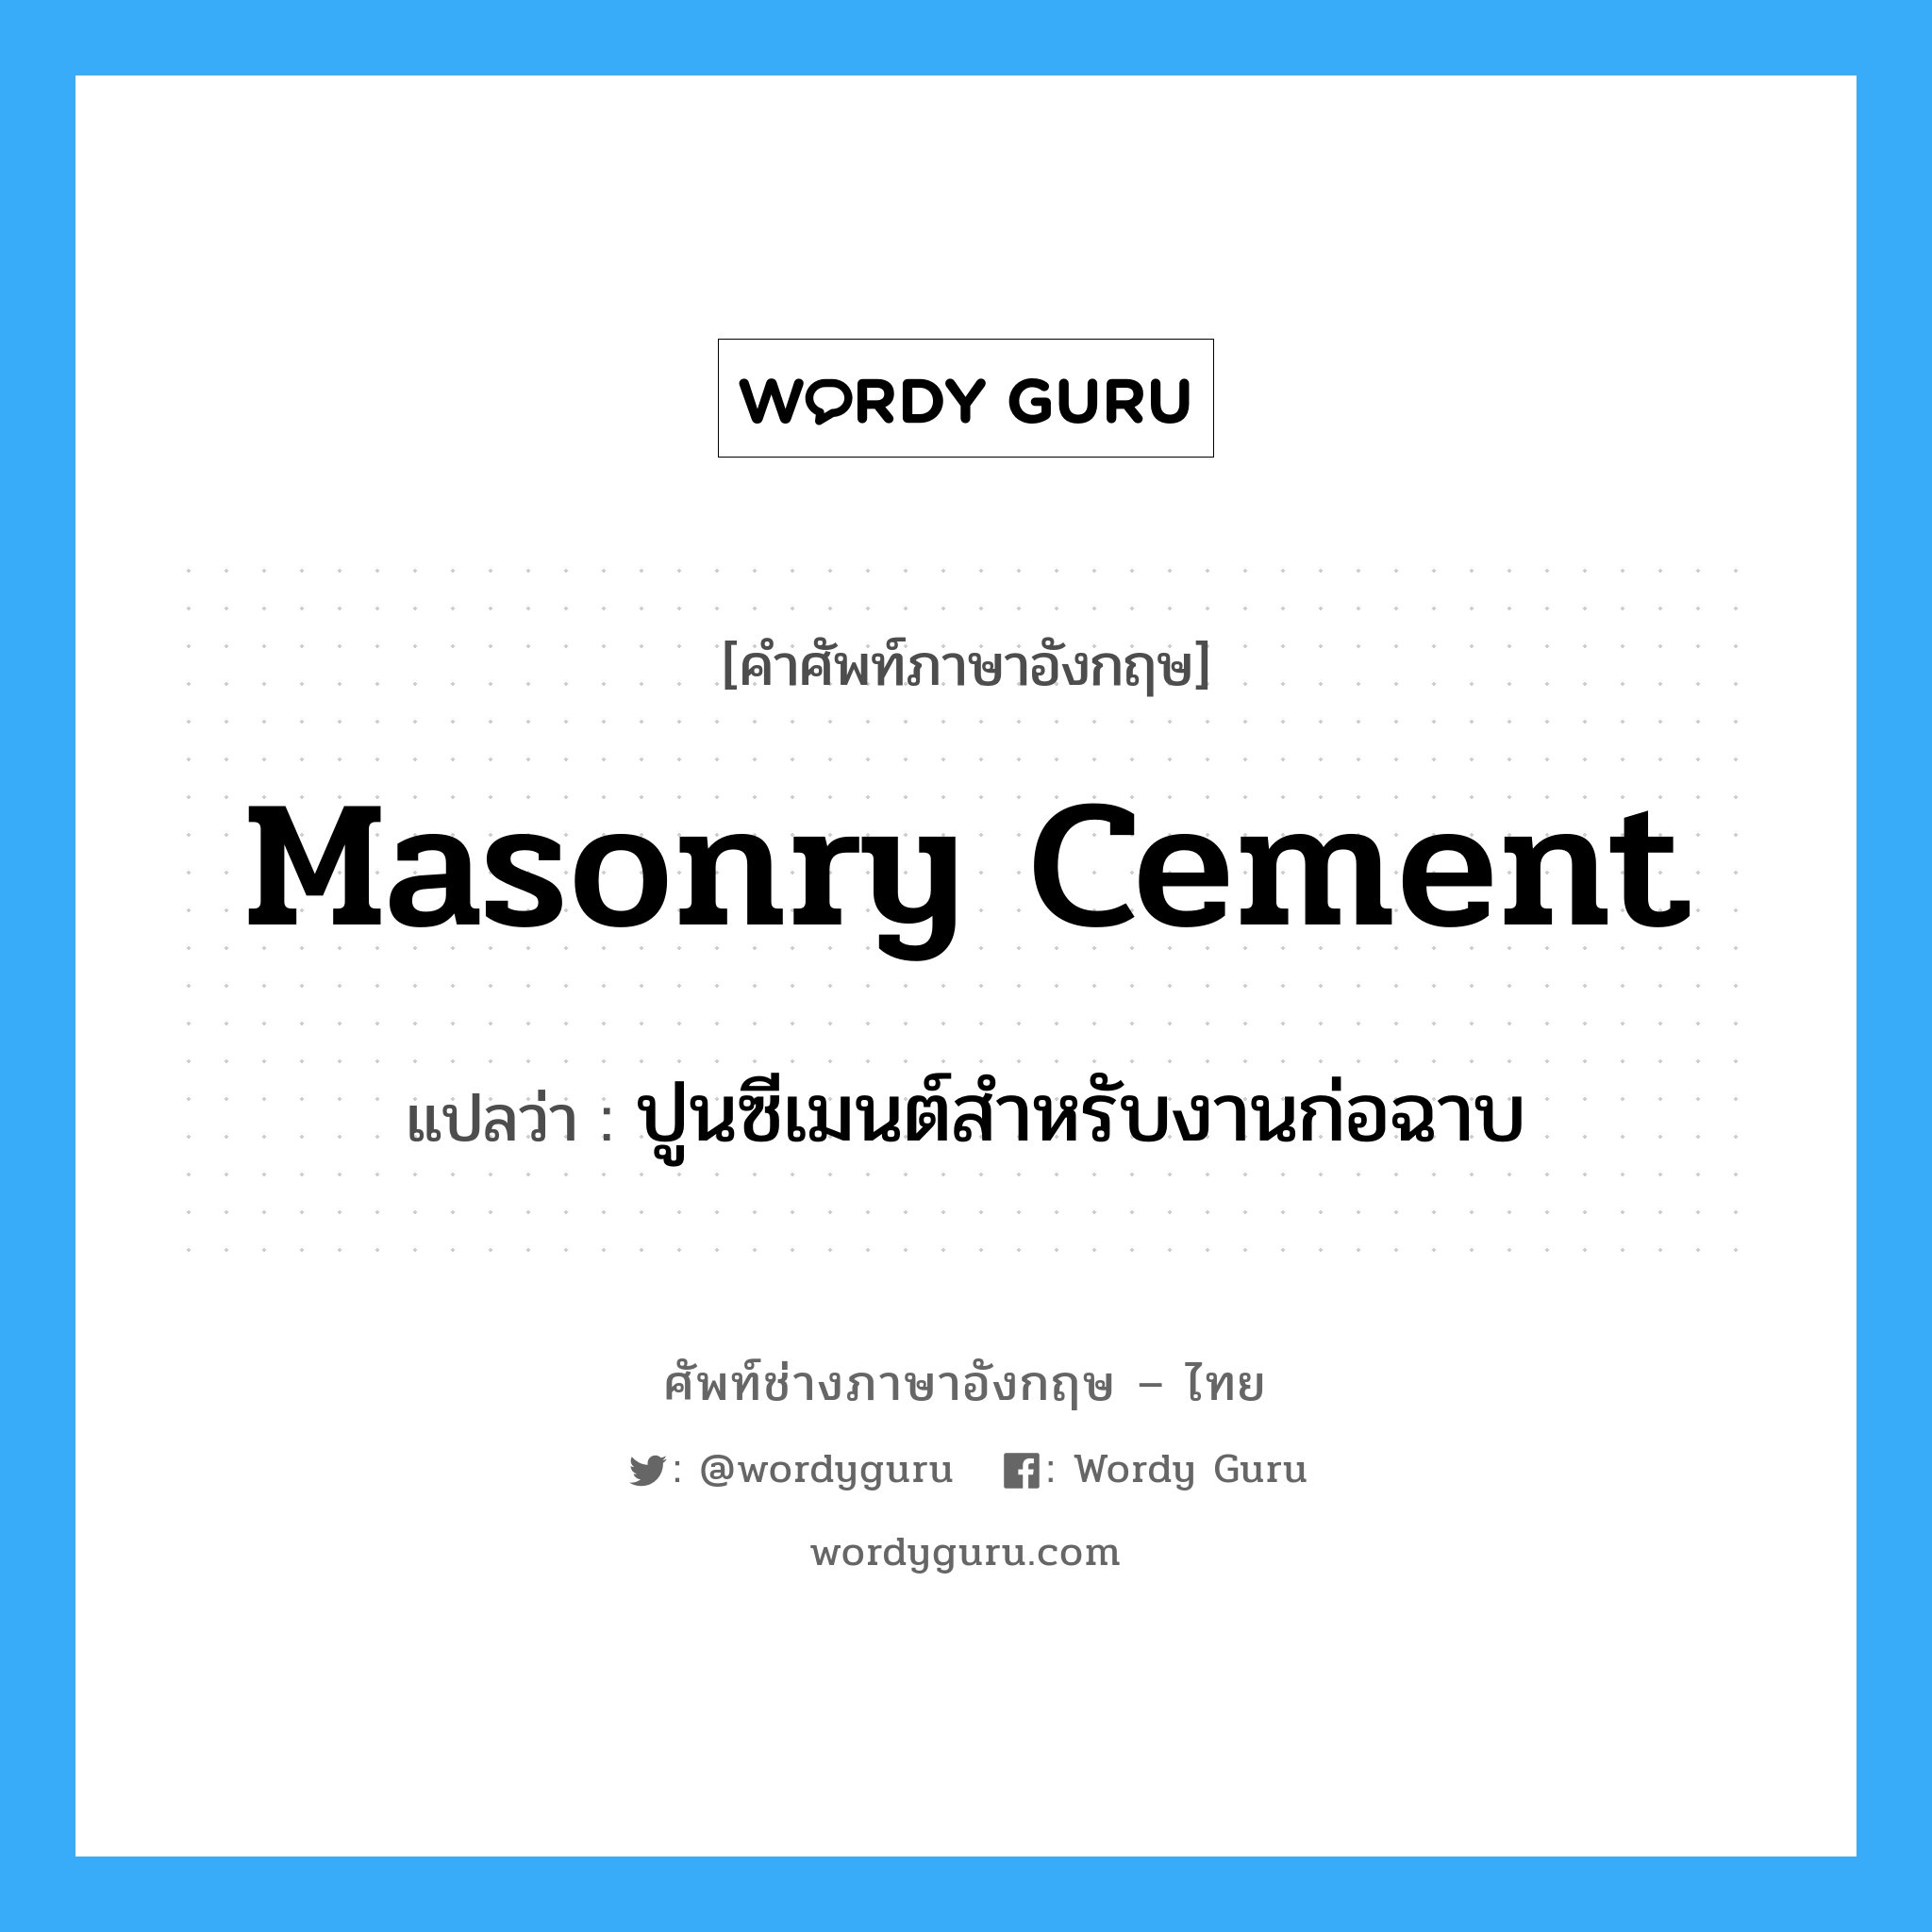 masonry cement แปลว่า?, คำศัพท์ช่างภาษาอังกฤษ - ไทย masonry cement คำศัพท์ภาษาอังกฤษ masonry cement แปลว่า ปูนซีเมนต์สำหรับงานก่อฉาบ